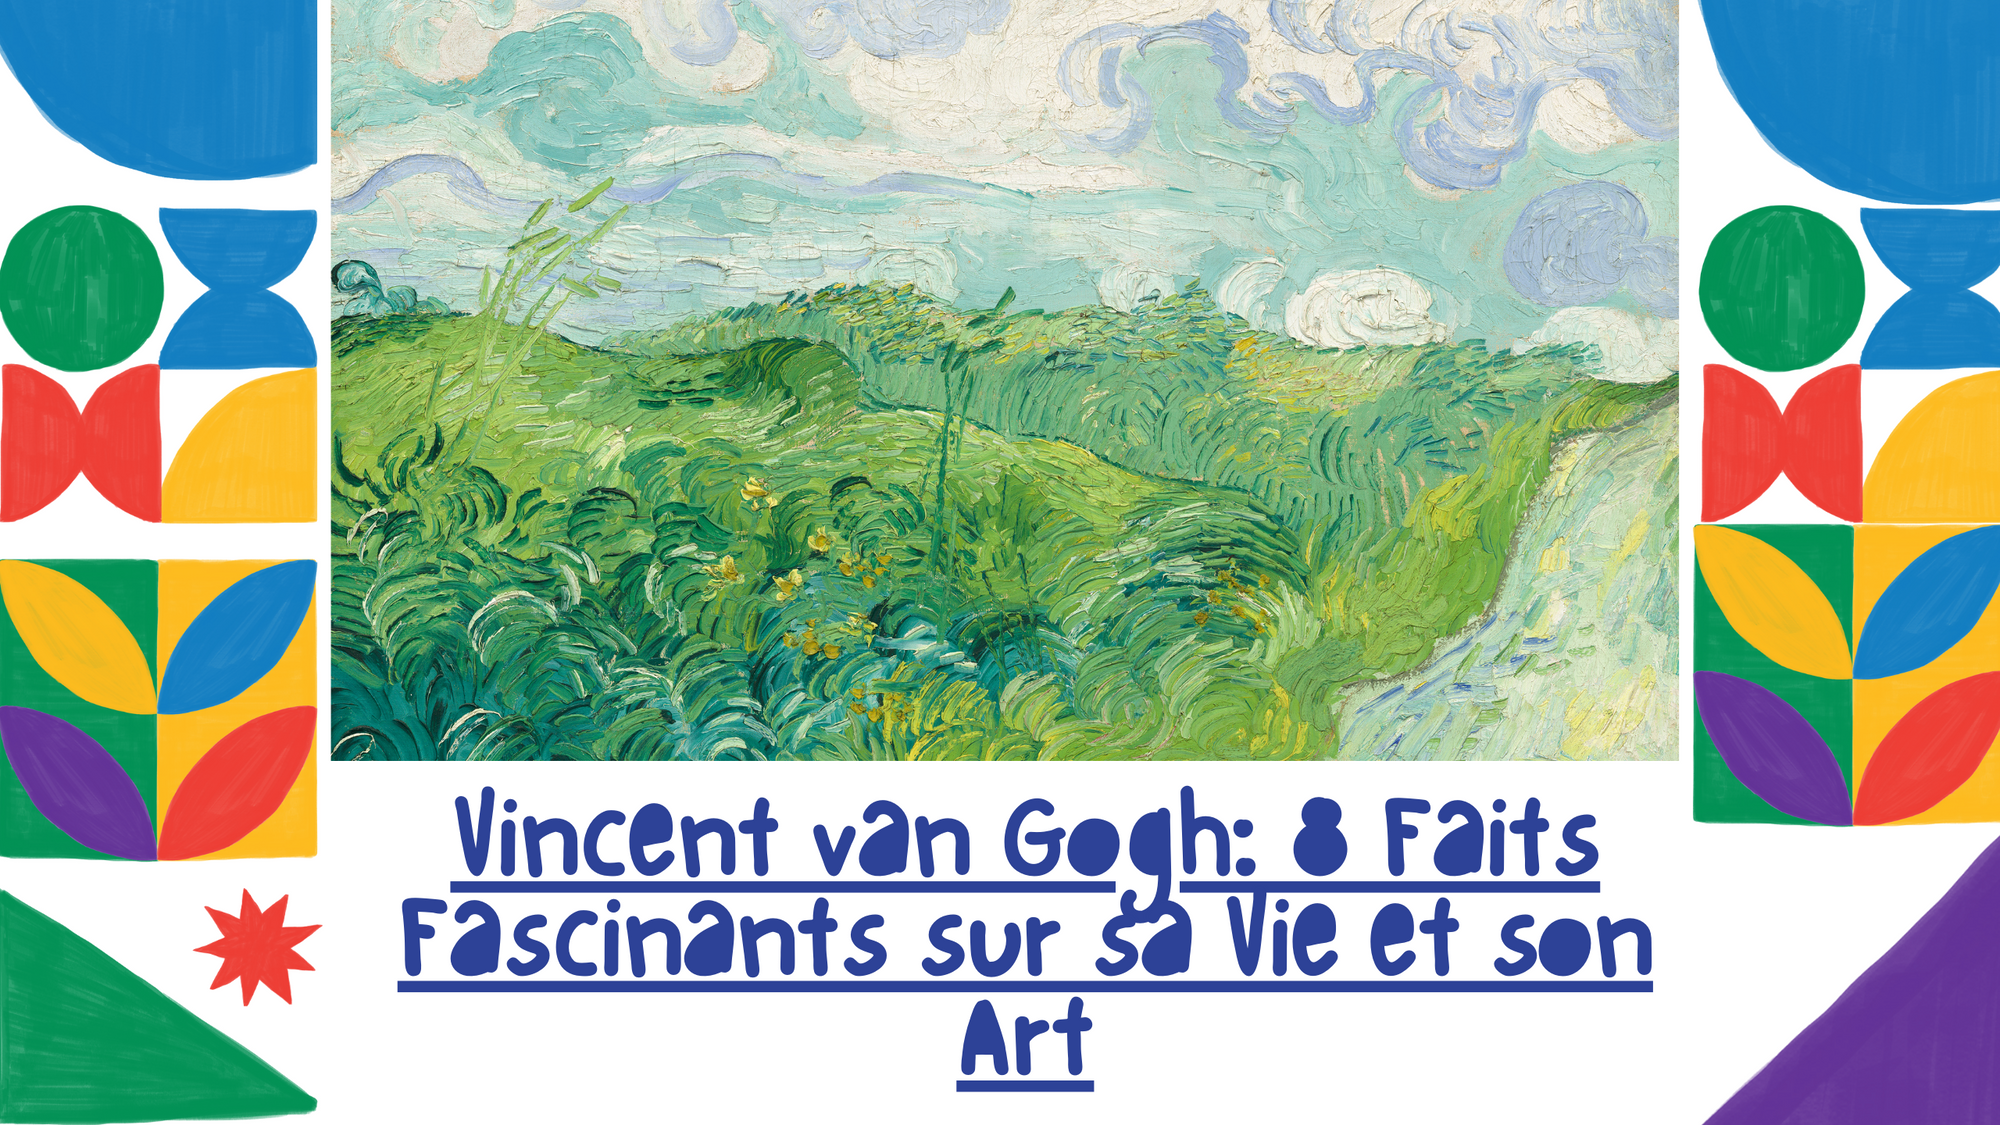 Vincent van Gogh: 8 Faits Fascinants sur sa Vie et son Art